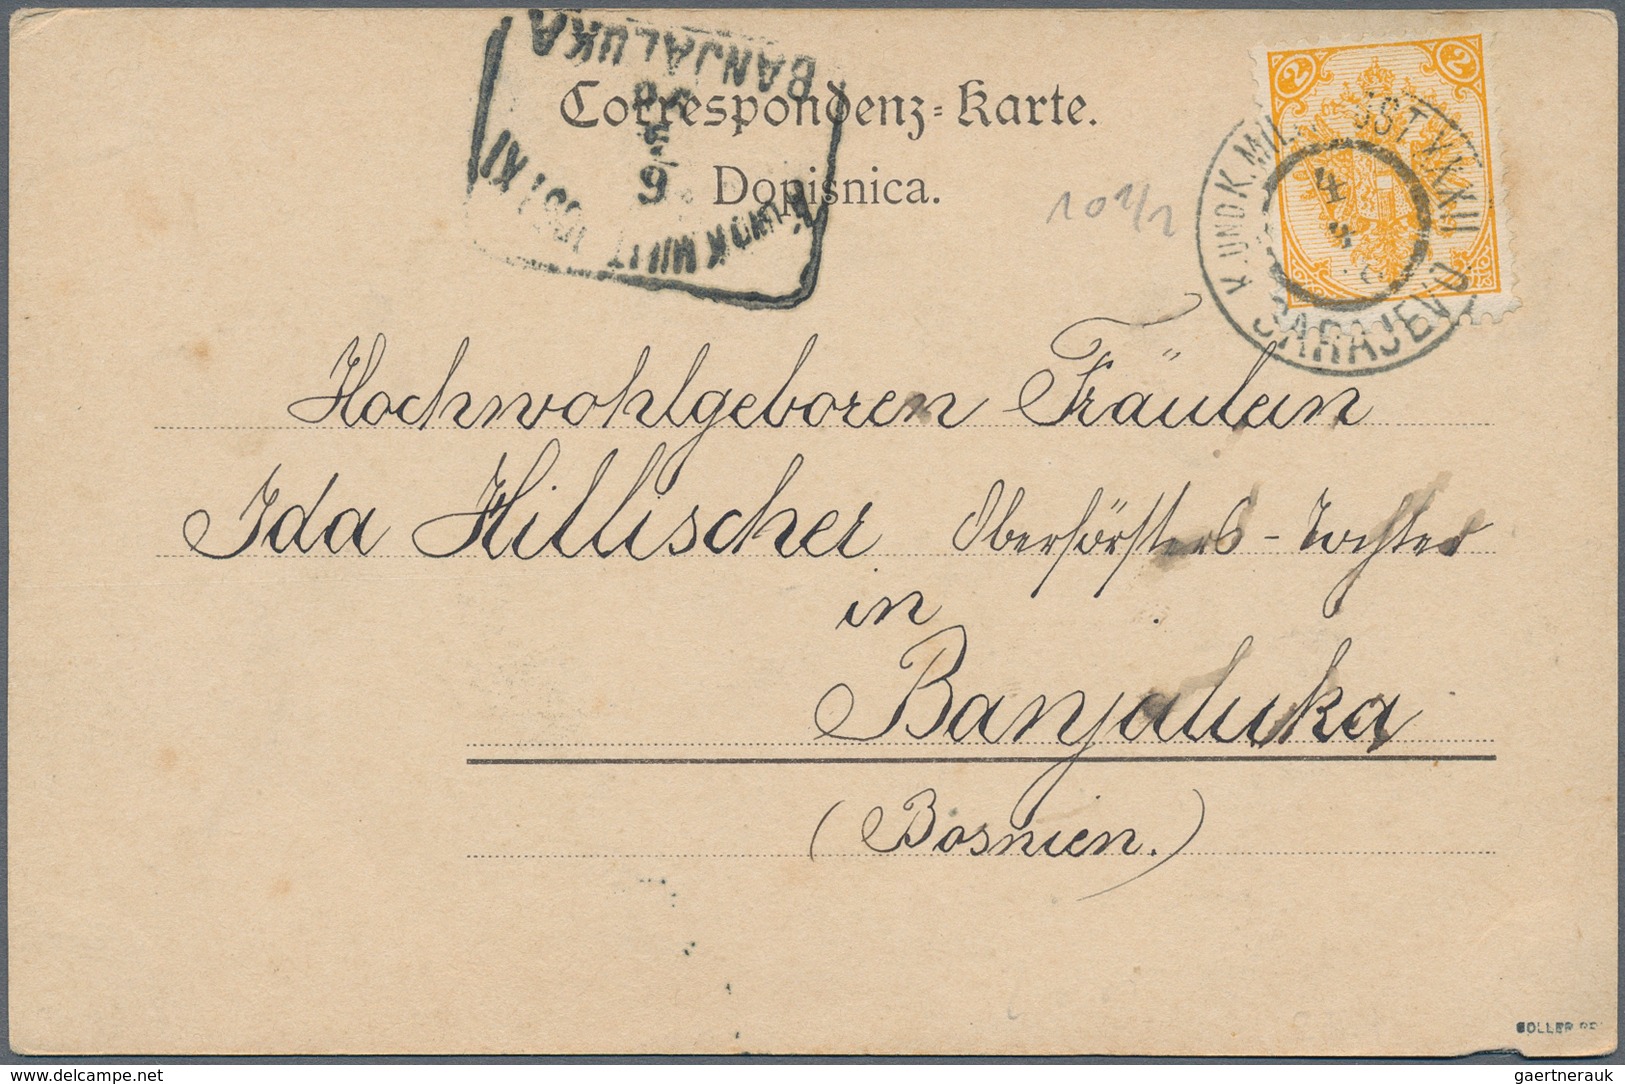 Österreich: 1860/1990 (ca.), meist bis 1960, Posten von nach Angaben ca. 250 Briefen, Karten, Ganzsa